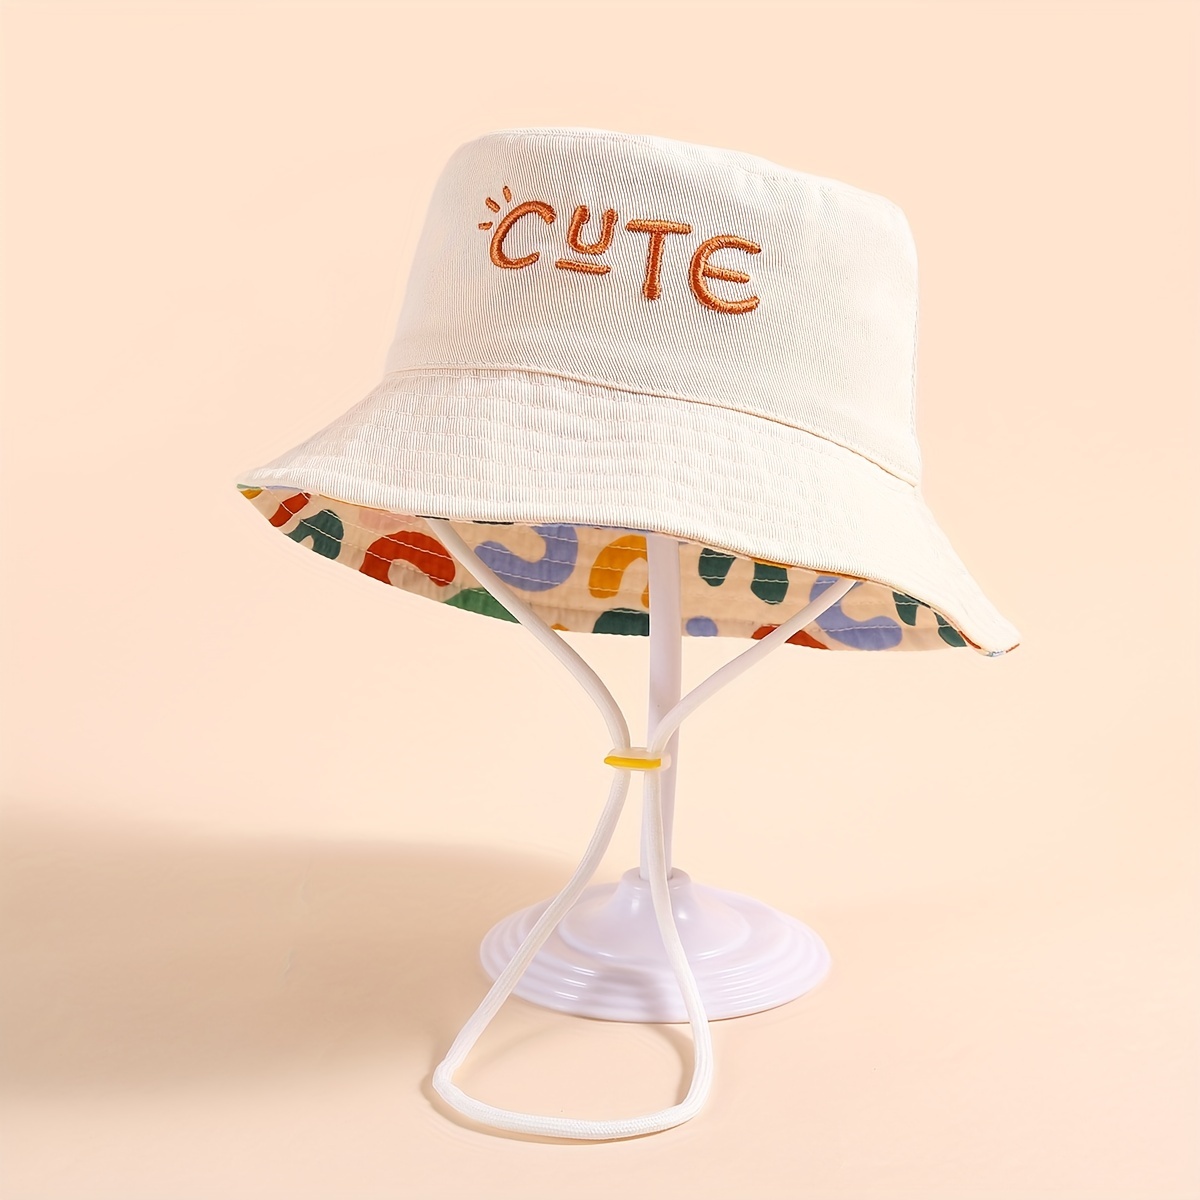 Bonito sombrero de pescador con bordado de letras, cordones transpirables,  ala ancha, protección solar, para viajes al aire libre, fiesta en la playa